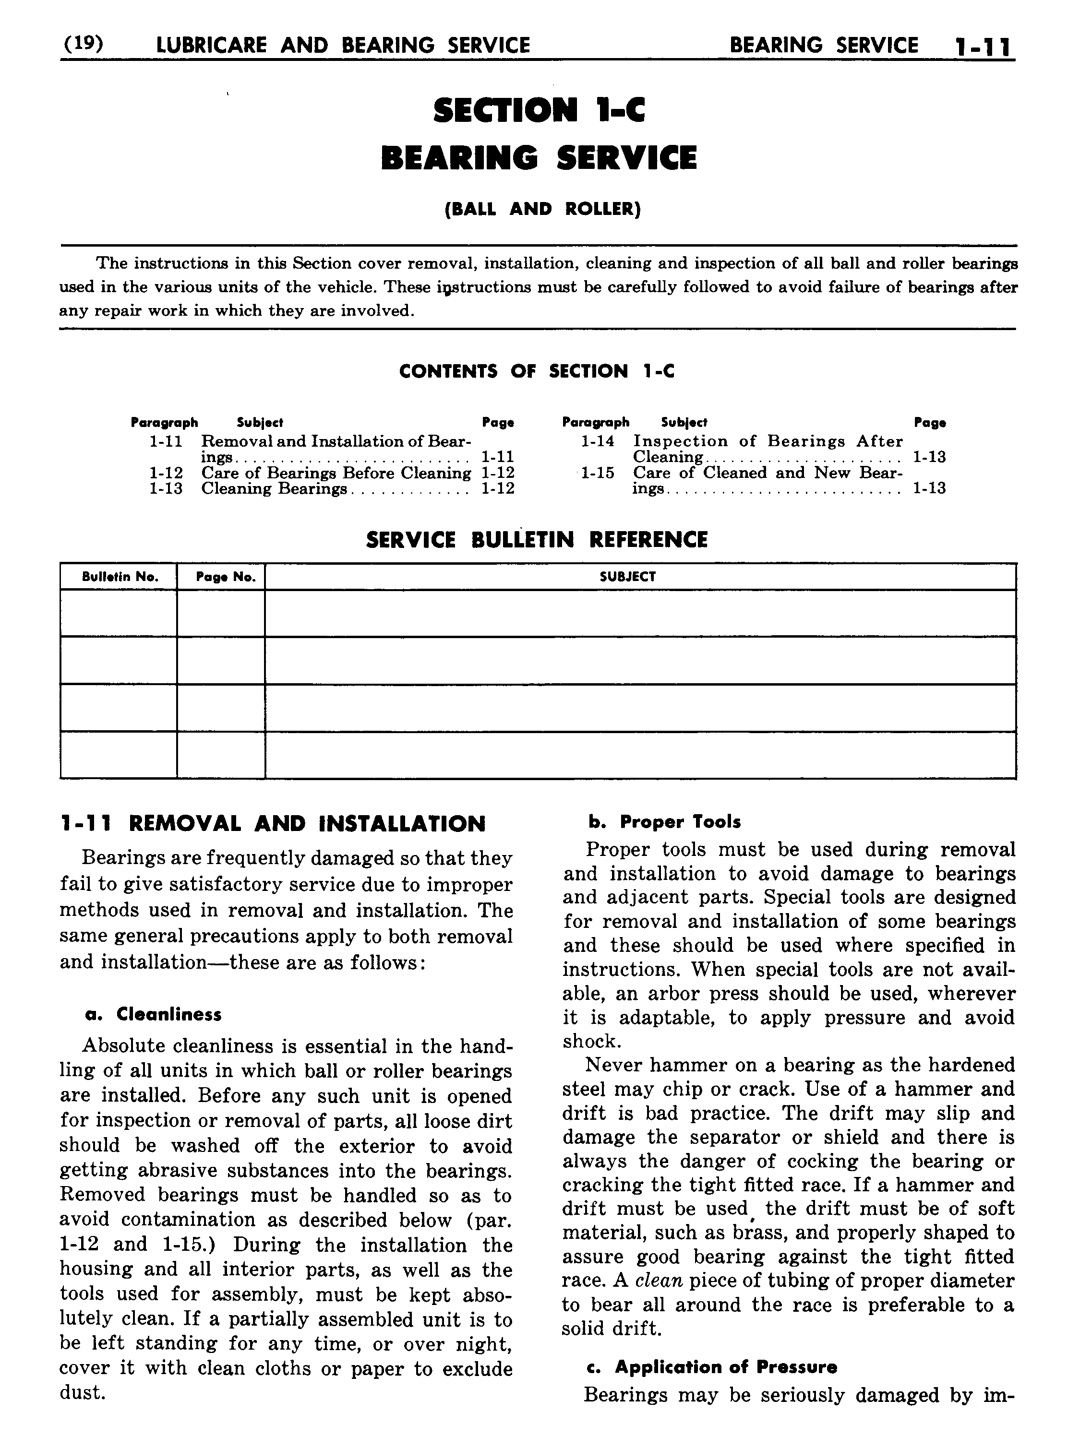 n_02 1948 Buick Shop Manual - Lubricare-011-011.jpg